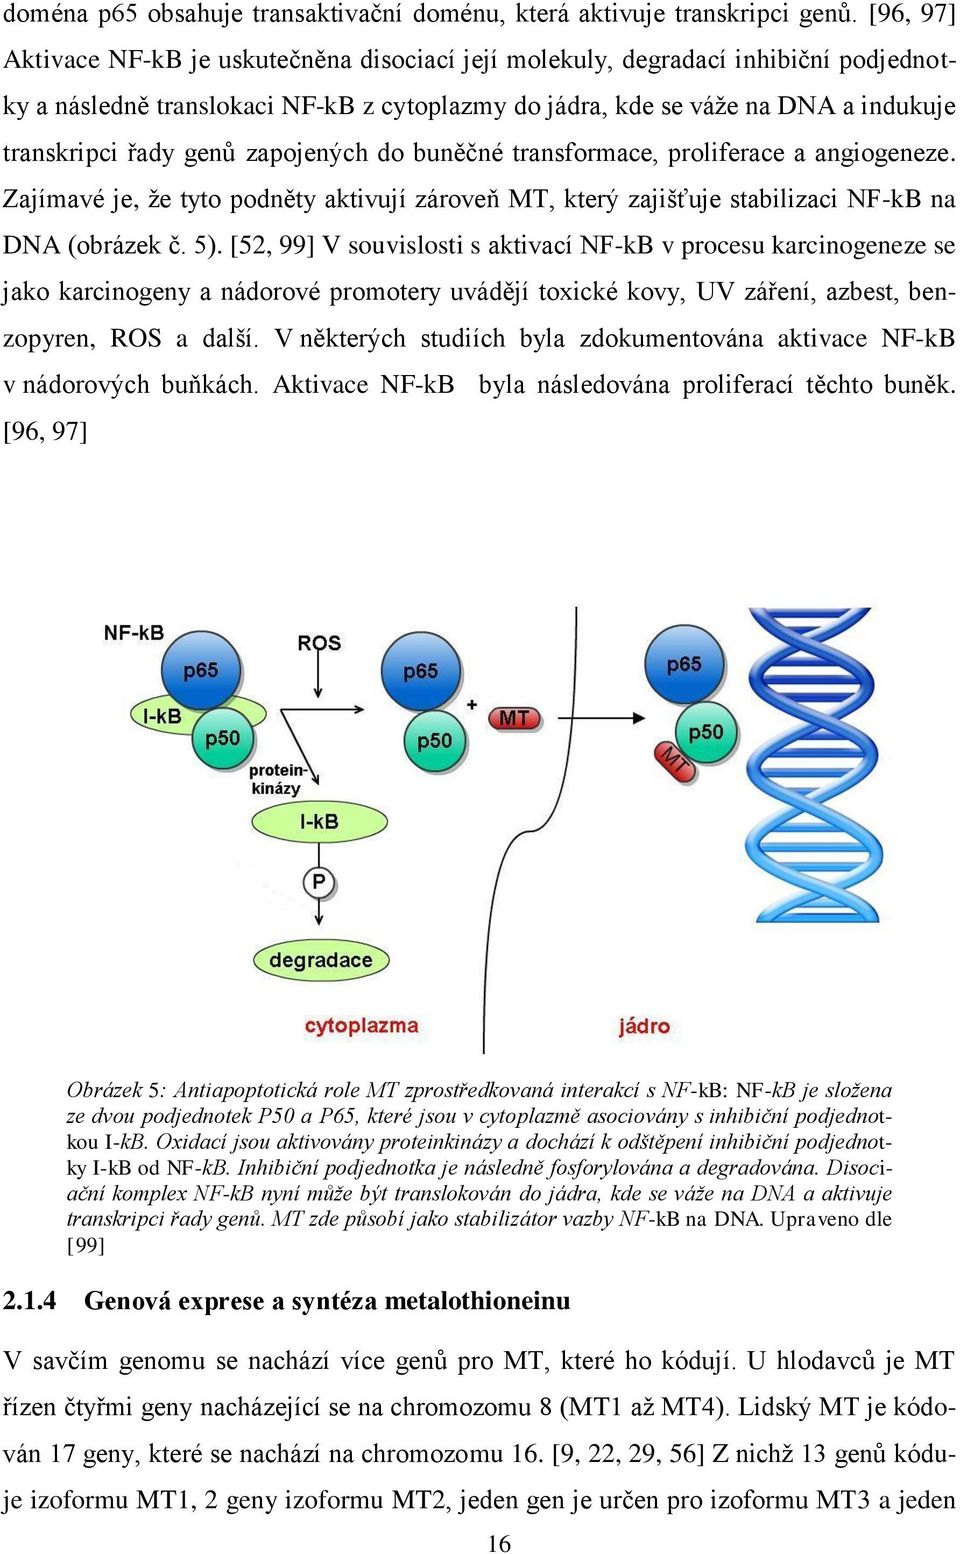 zapojených do buněčné transformace, proliferace a angiogeneze. Zajímavé je, že tyto podněty aktivují zároveň MT, který zajišťuje stabilizaci NF-kB na DNA (obrázek č. 5).